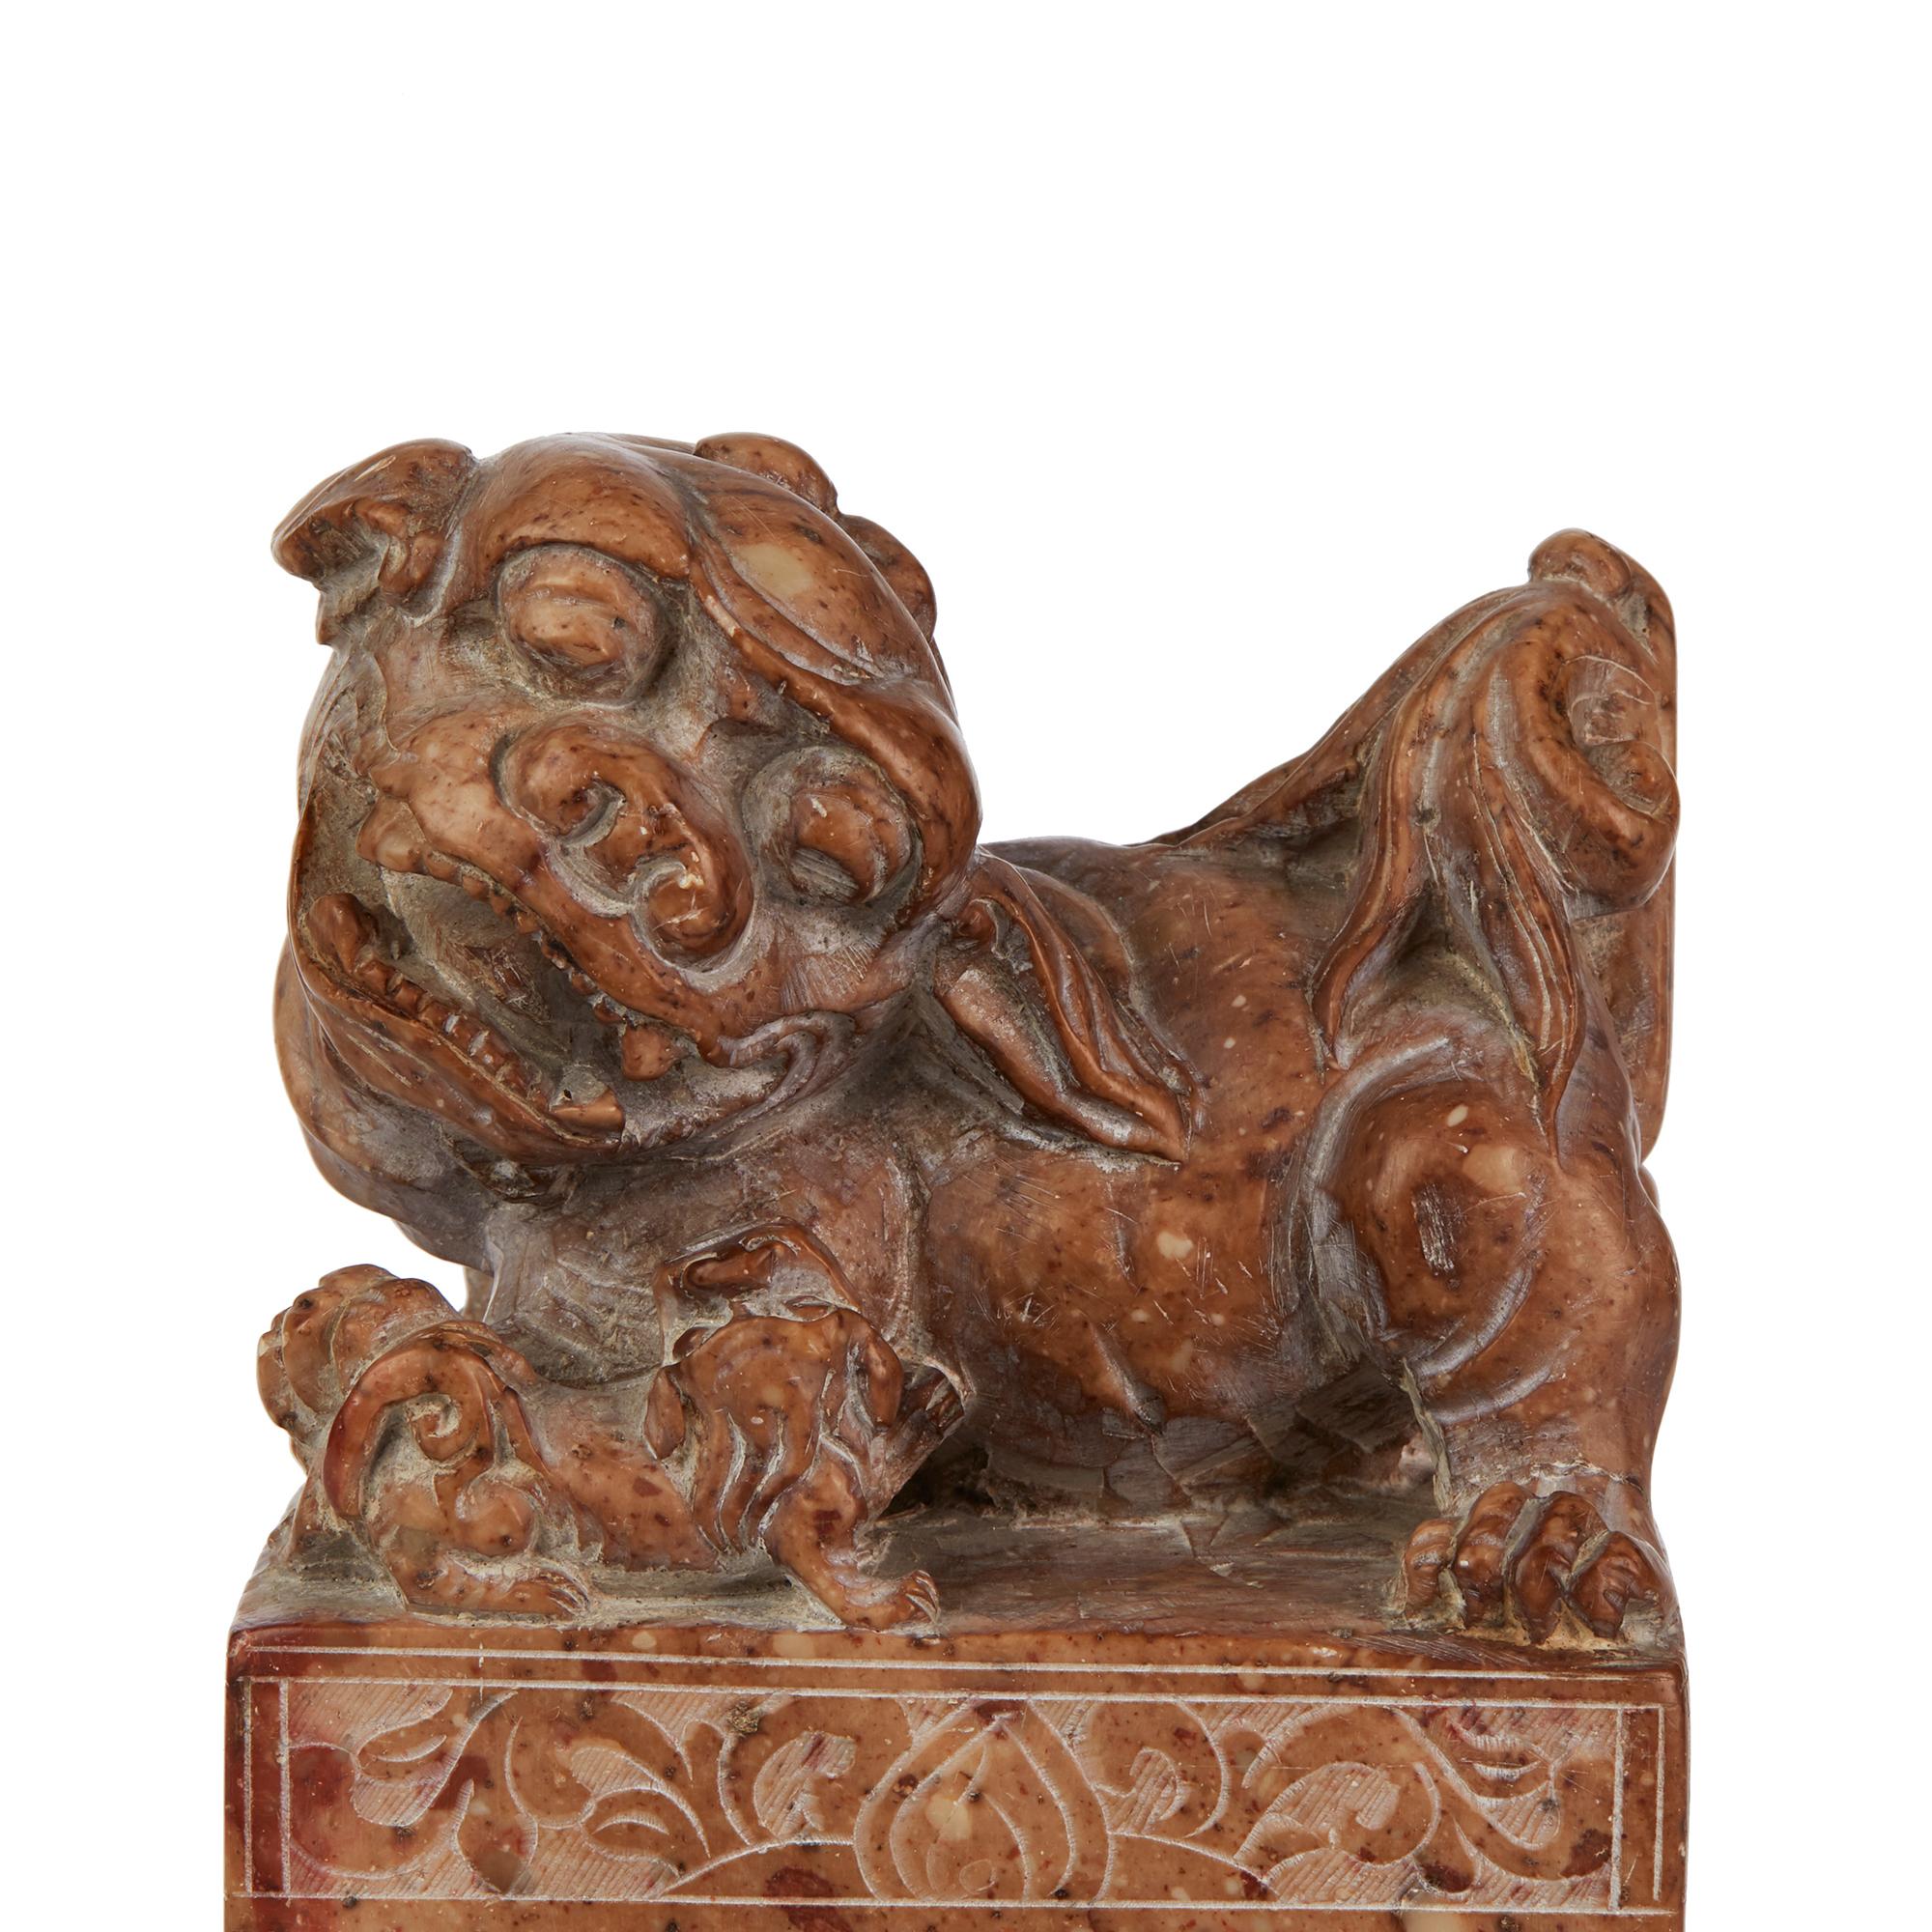 Un grand et bien sculpté sceau en pierre de savon chinois de forme rectangulaire sculpté avec un grand chien de Fo et un chiot au sommet. Sculpté dans une pierre de couleur brune et légèrement rosée, le corps du sceau est sculpté de panneaux